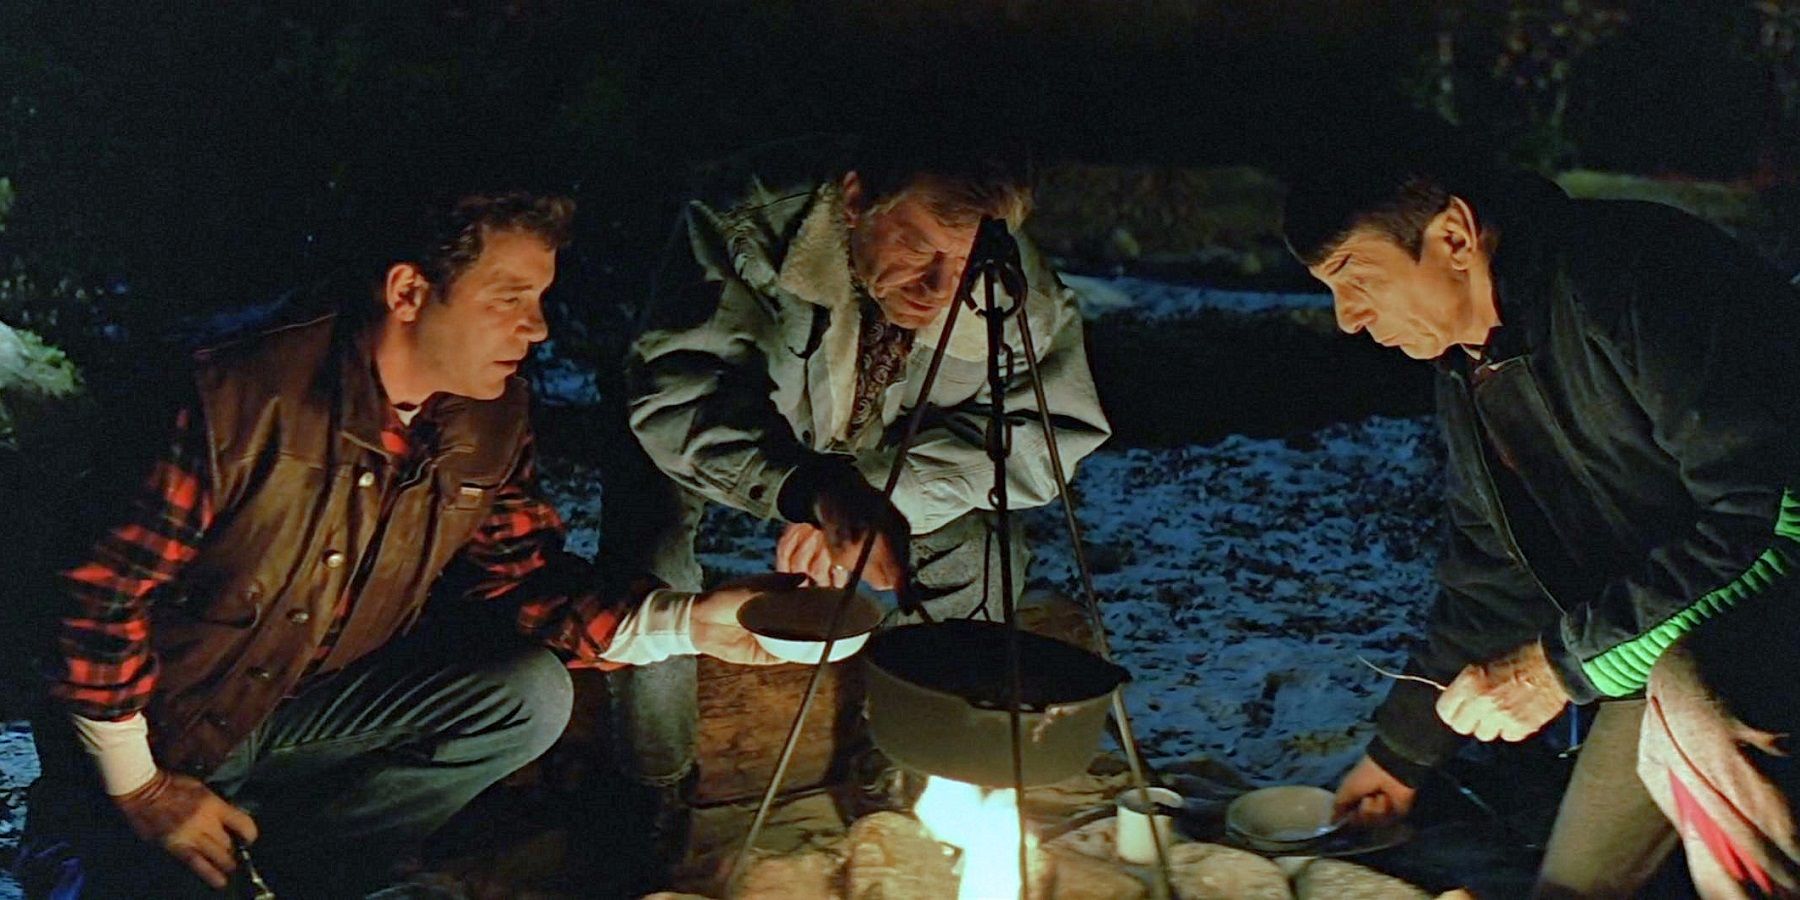 Kirk, Spock e McCoy ao redor de uma fogueira em Star Trek V: The Final Frontier.